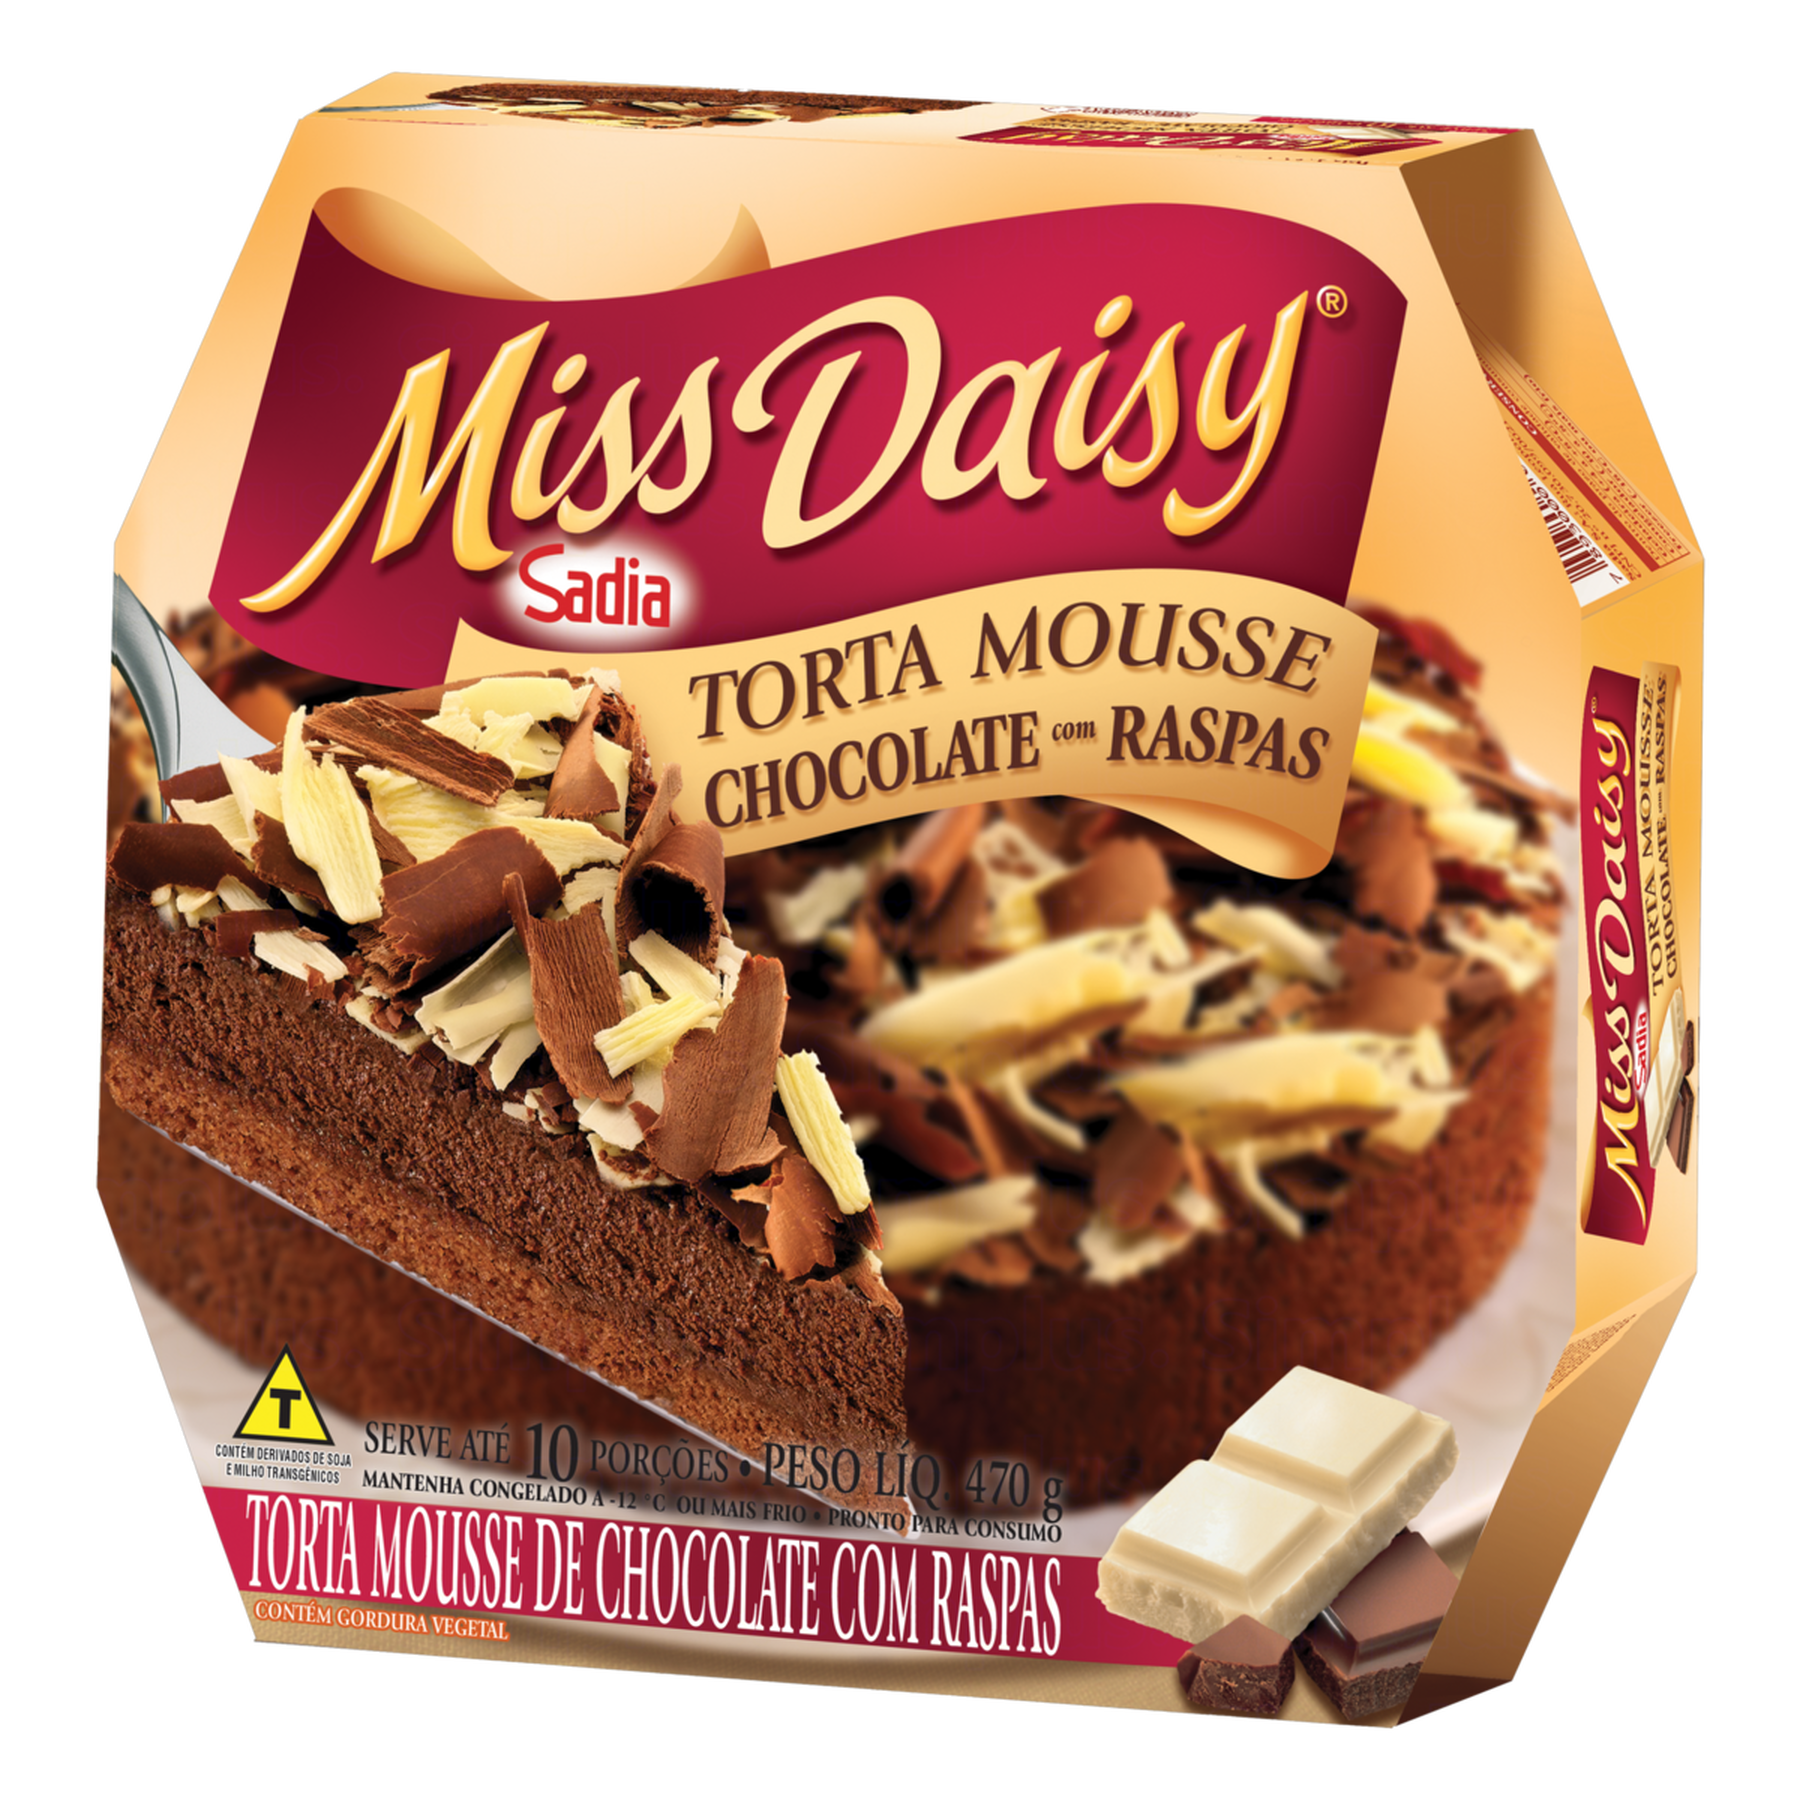 Torta Mousse de Chocolate com Raspas Miss Daisy Caixa 470g